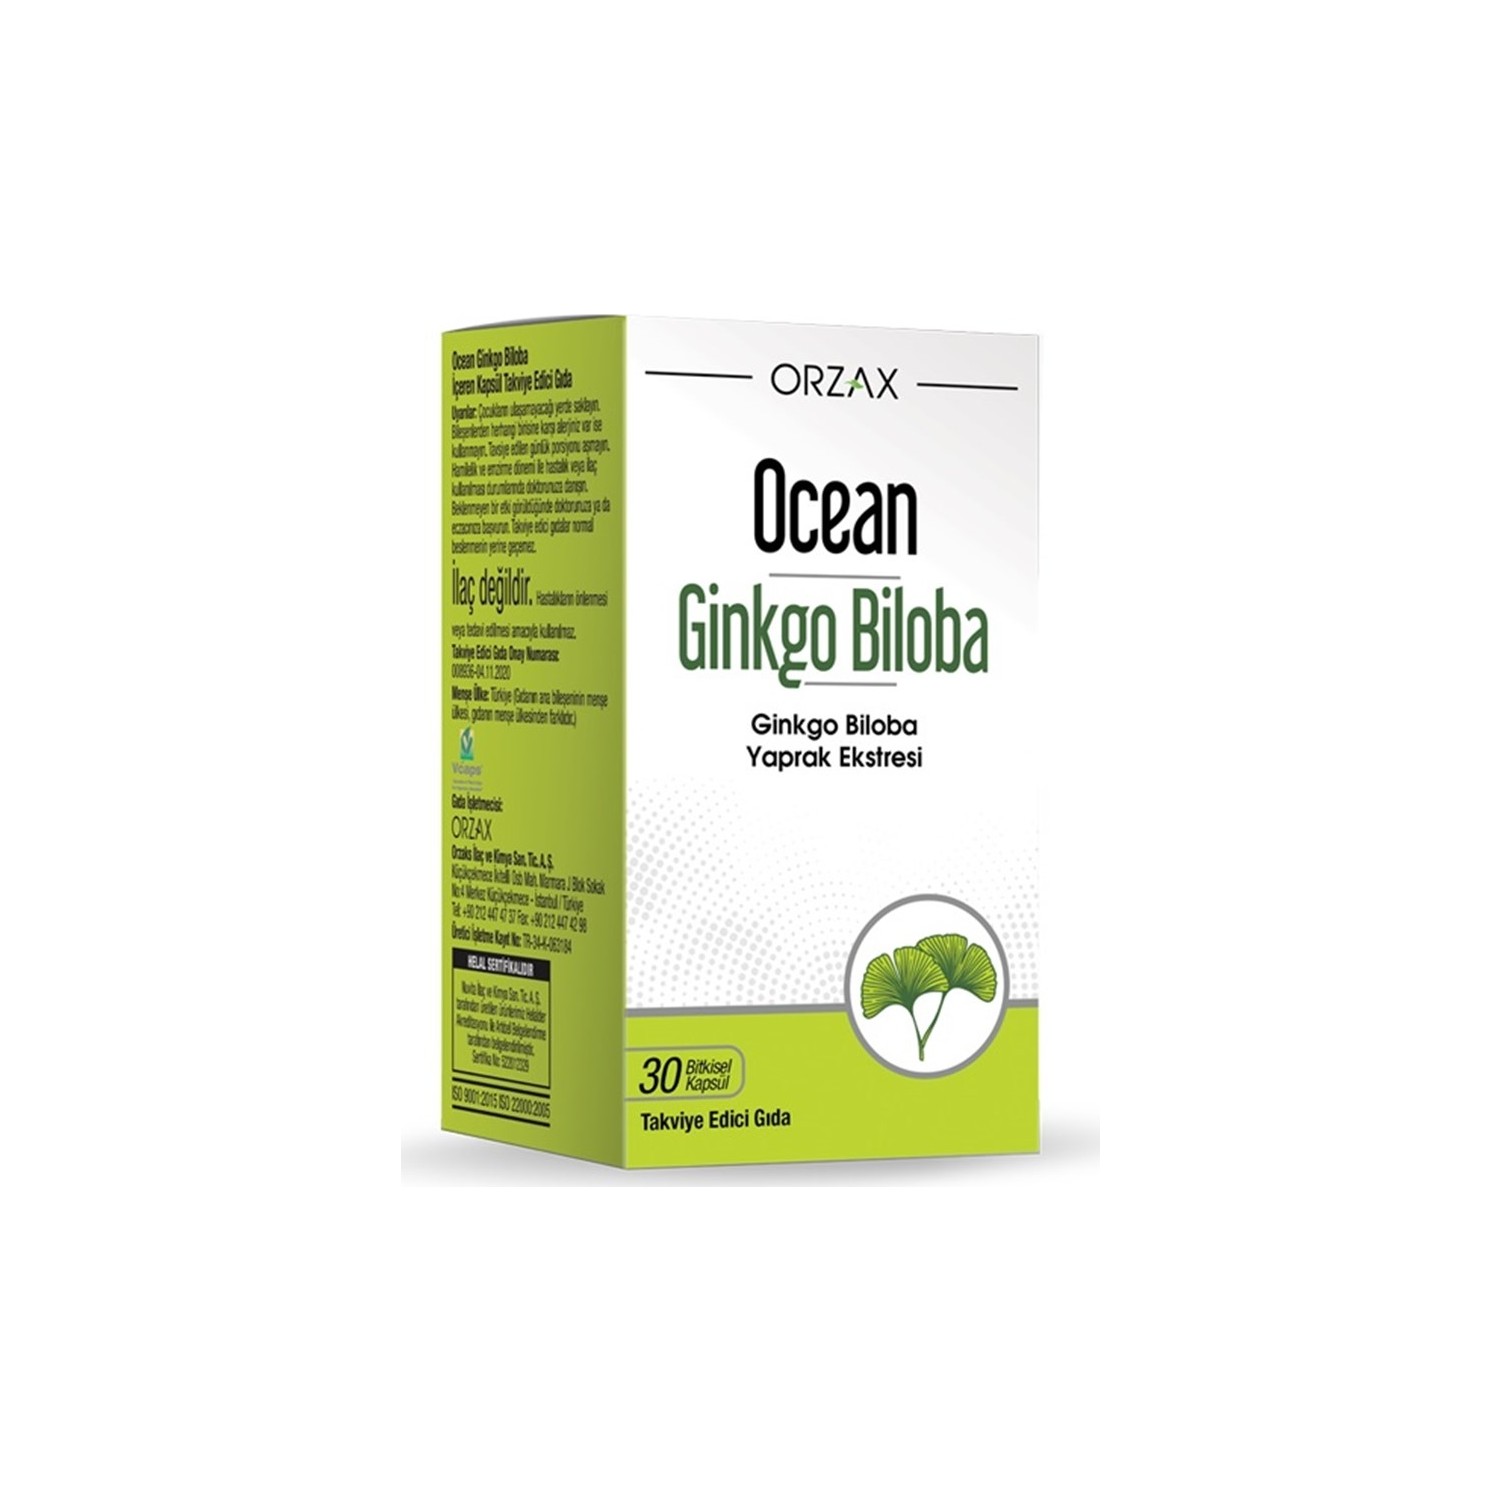 21st century экстракт ginkgo biloba стандартизированный 200 вегетарианских капсул Пищевая добавка Orzax Ocean Ginkgo Biloba, 30 капсул